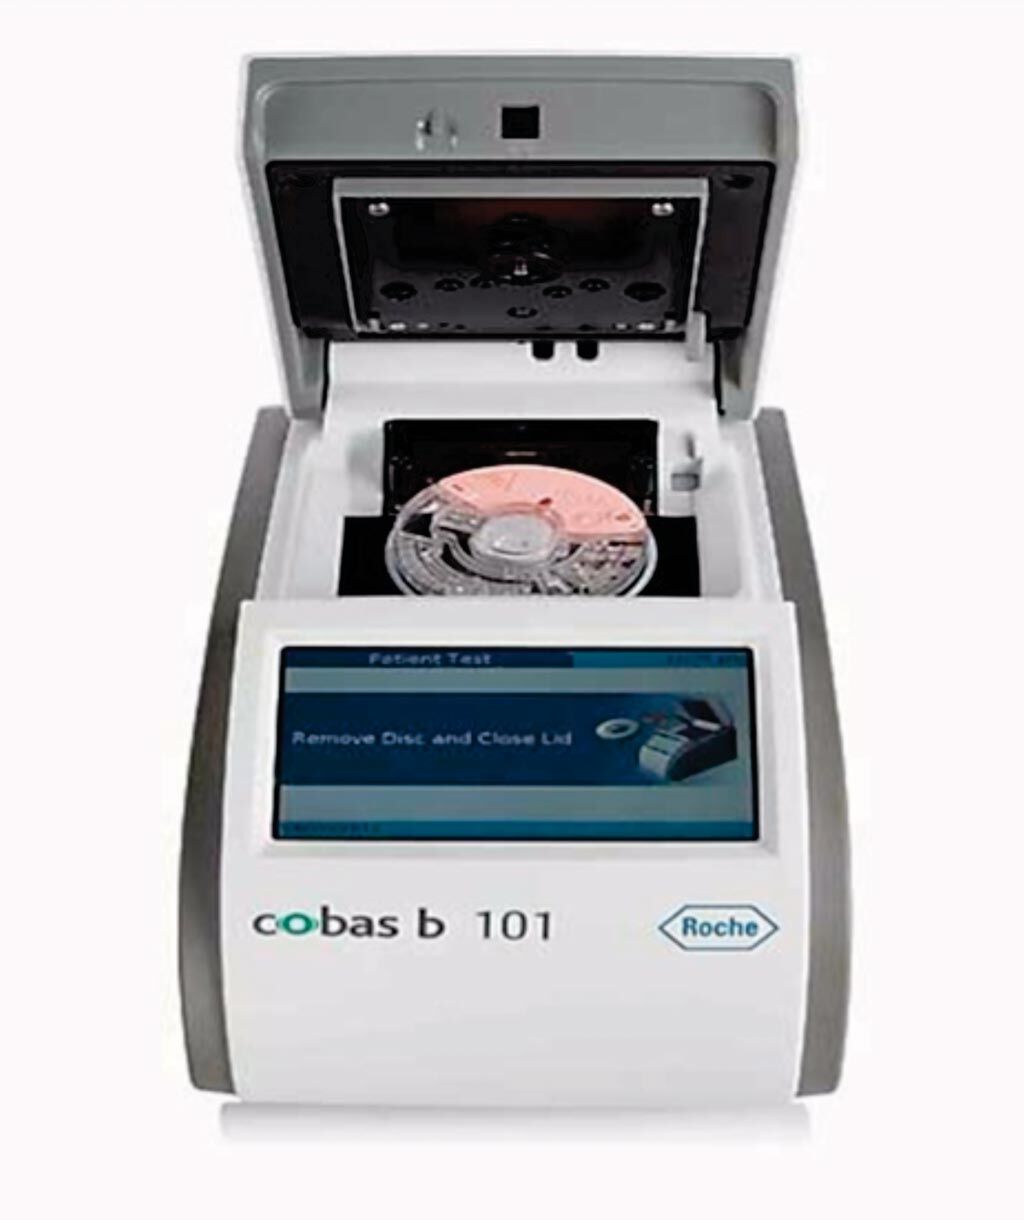 Imagen: El sistema cobas b 101 POC; un sistema de prueba de diagnóstico in vitro (IVD) que ofrece las mediciones de proteína C reactiva, HbA1c y un perfil completo de lípidos (CHOL, HDL, LDL, TG) en un dispositivo para los puntos de atención (Fotografía cortesía de Roche Diagnostics).